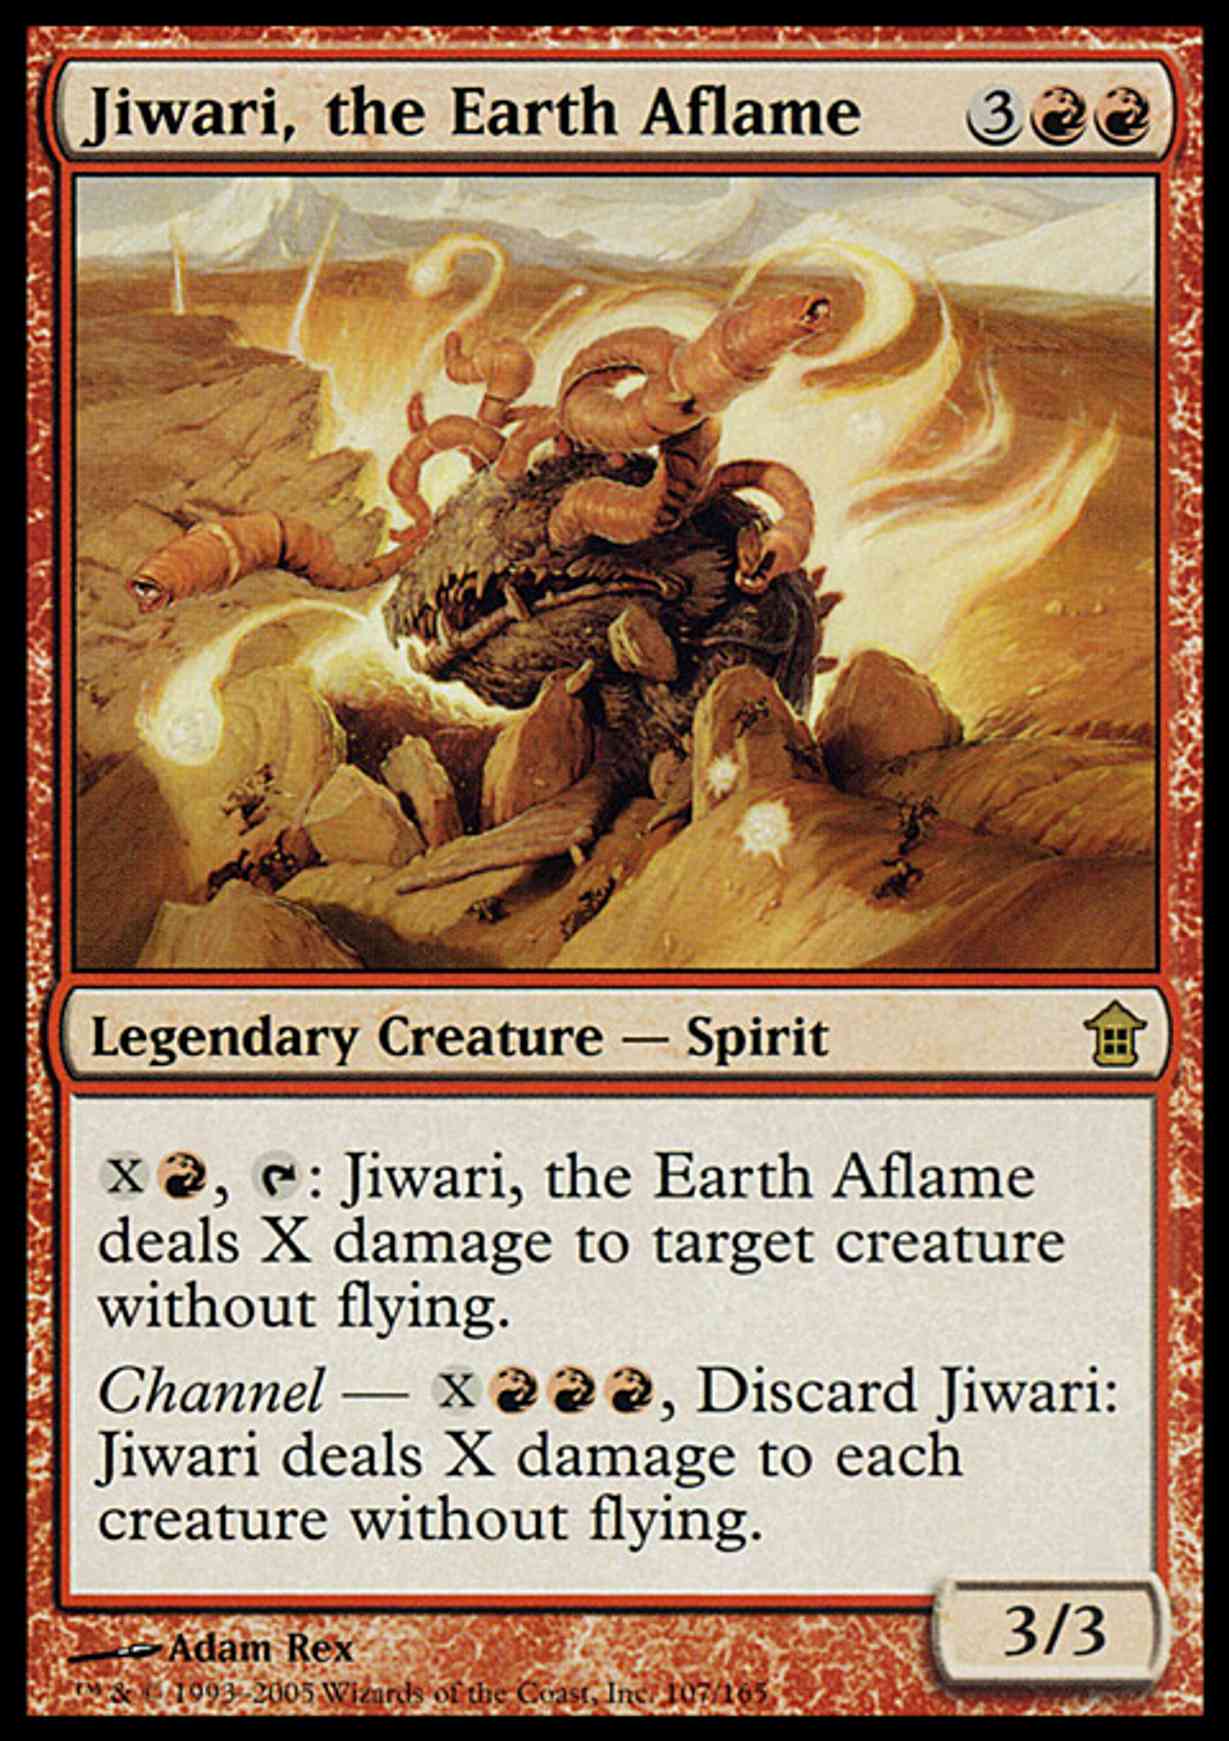 Jiwari, the Earth Aflame magic card front